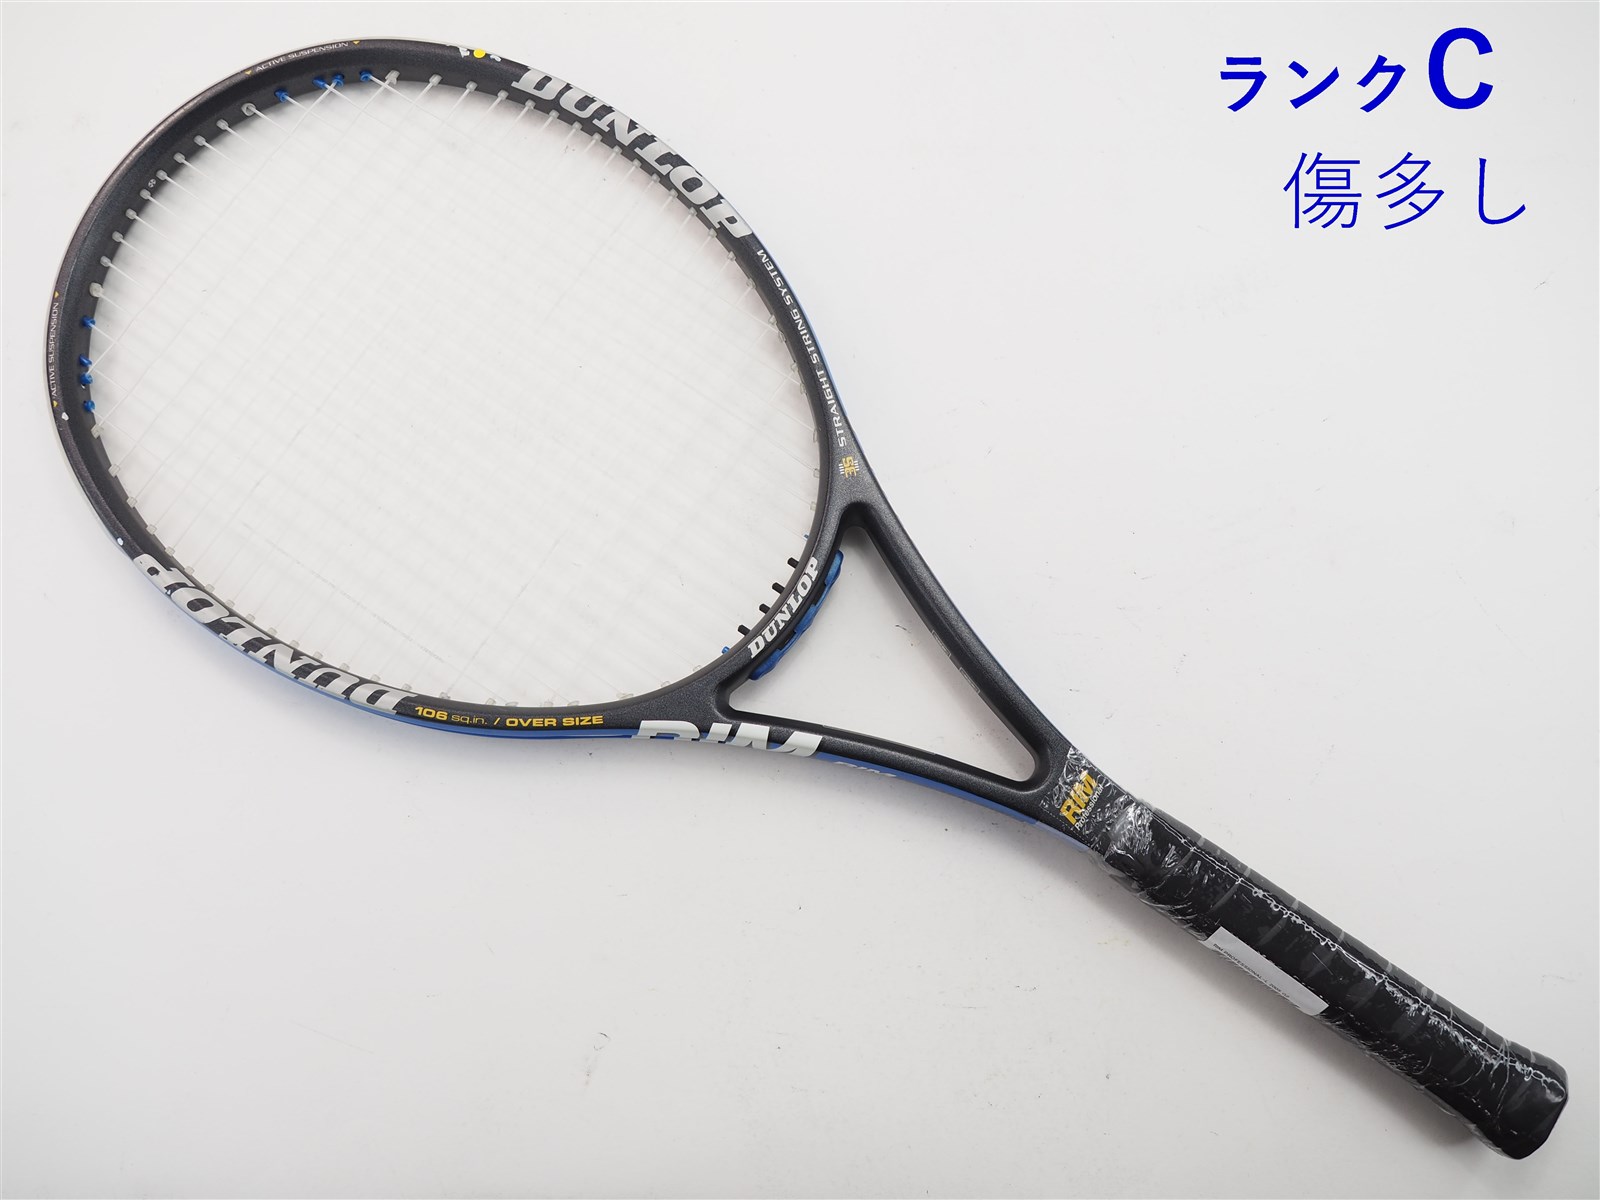 ガット無しグリップサイズテニスラケット ダンロップ ダイアクラスター リム 4.0 2005年モデル (G2)DUNLOP Diacluster RIM 4.0 2005